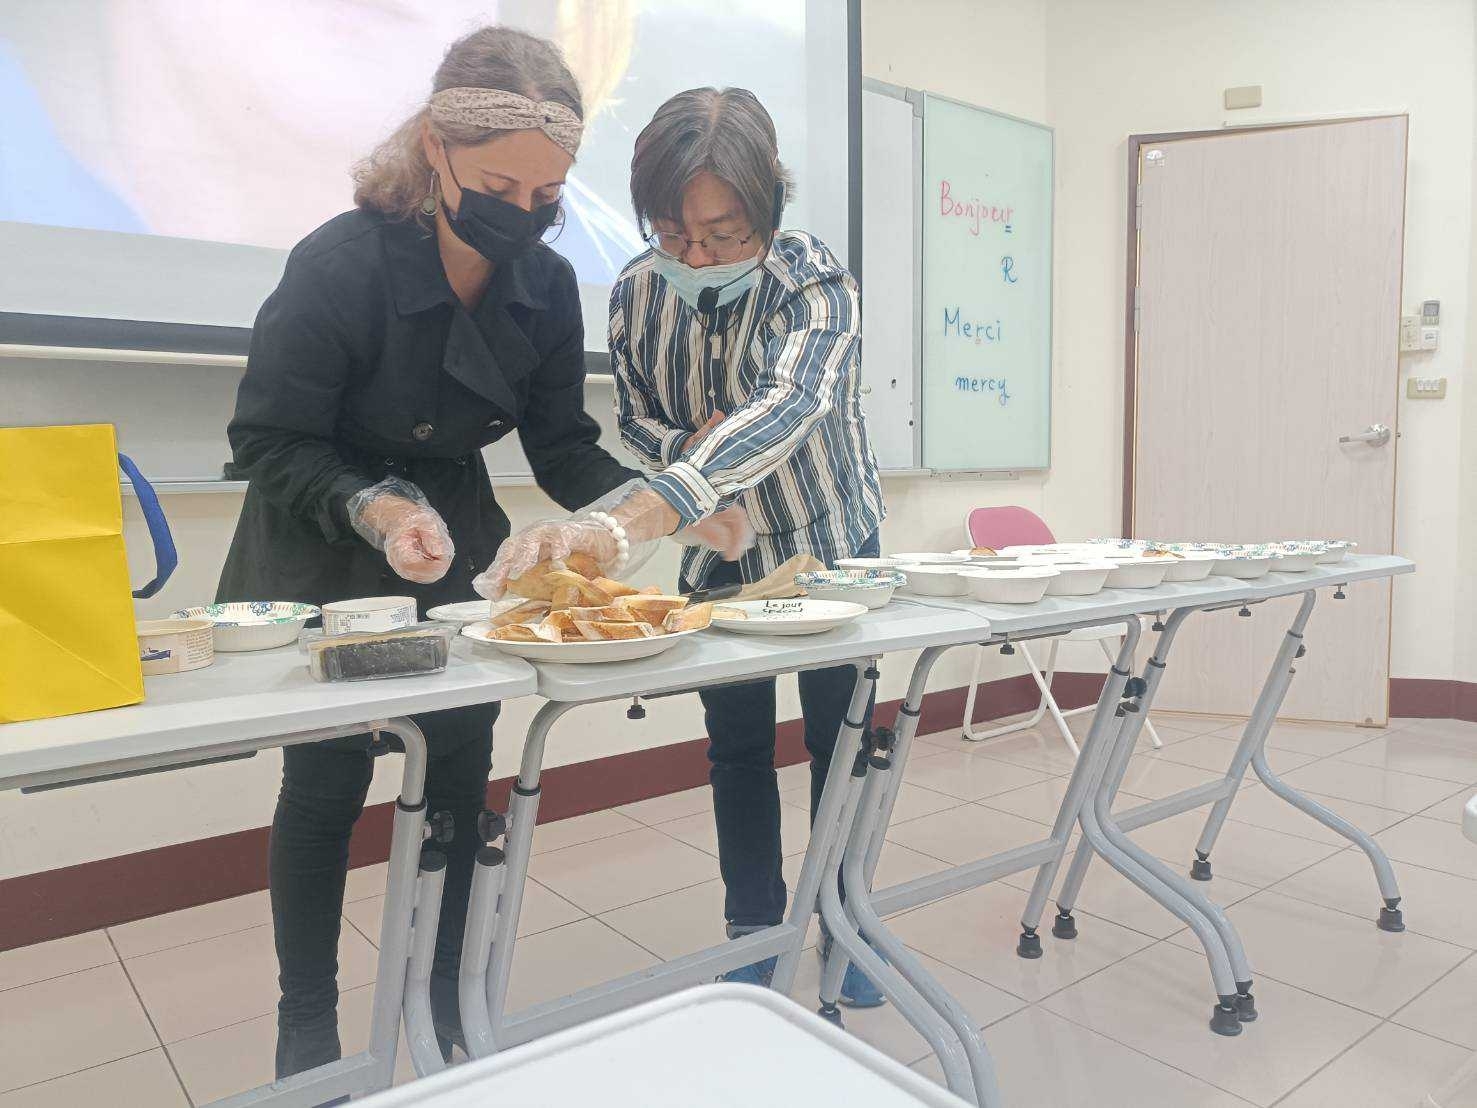 講座中助教與同學分享法國長棍麵包與法國乳酪